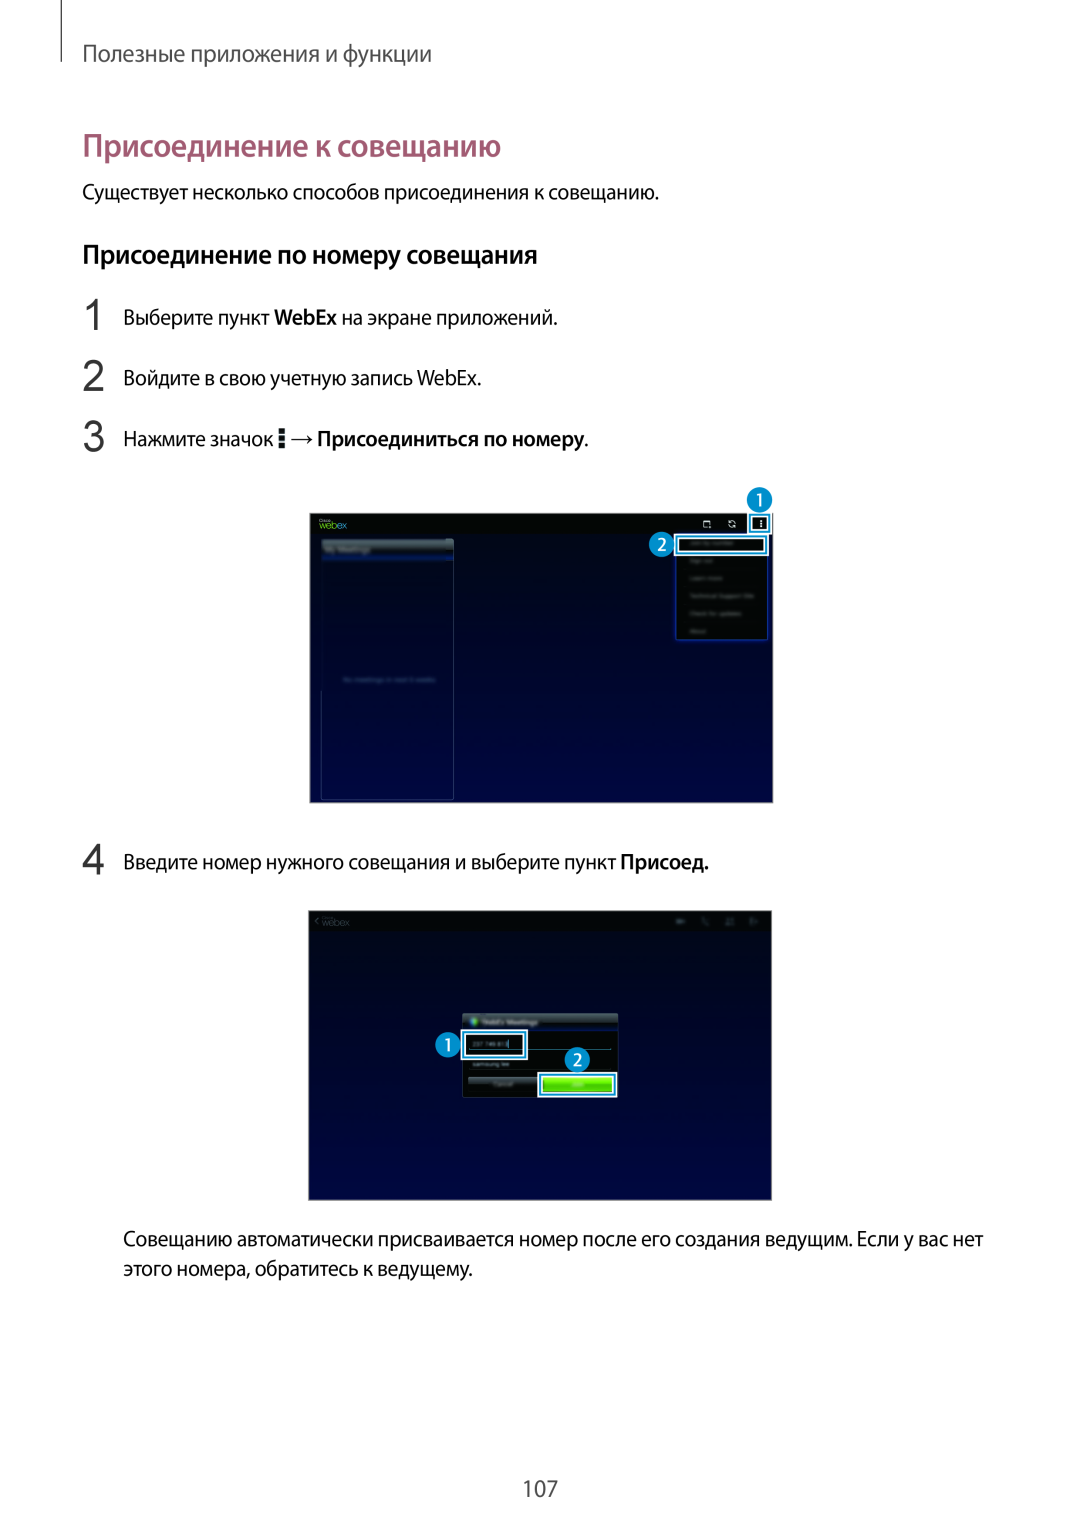 Samsung SM-T800NZWASER manual Присоединение к совещанию, Присоединение по номеру совещания, Полезные приложения и функции 